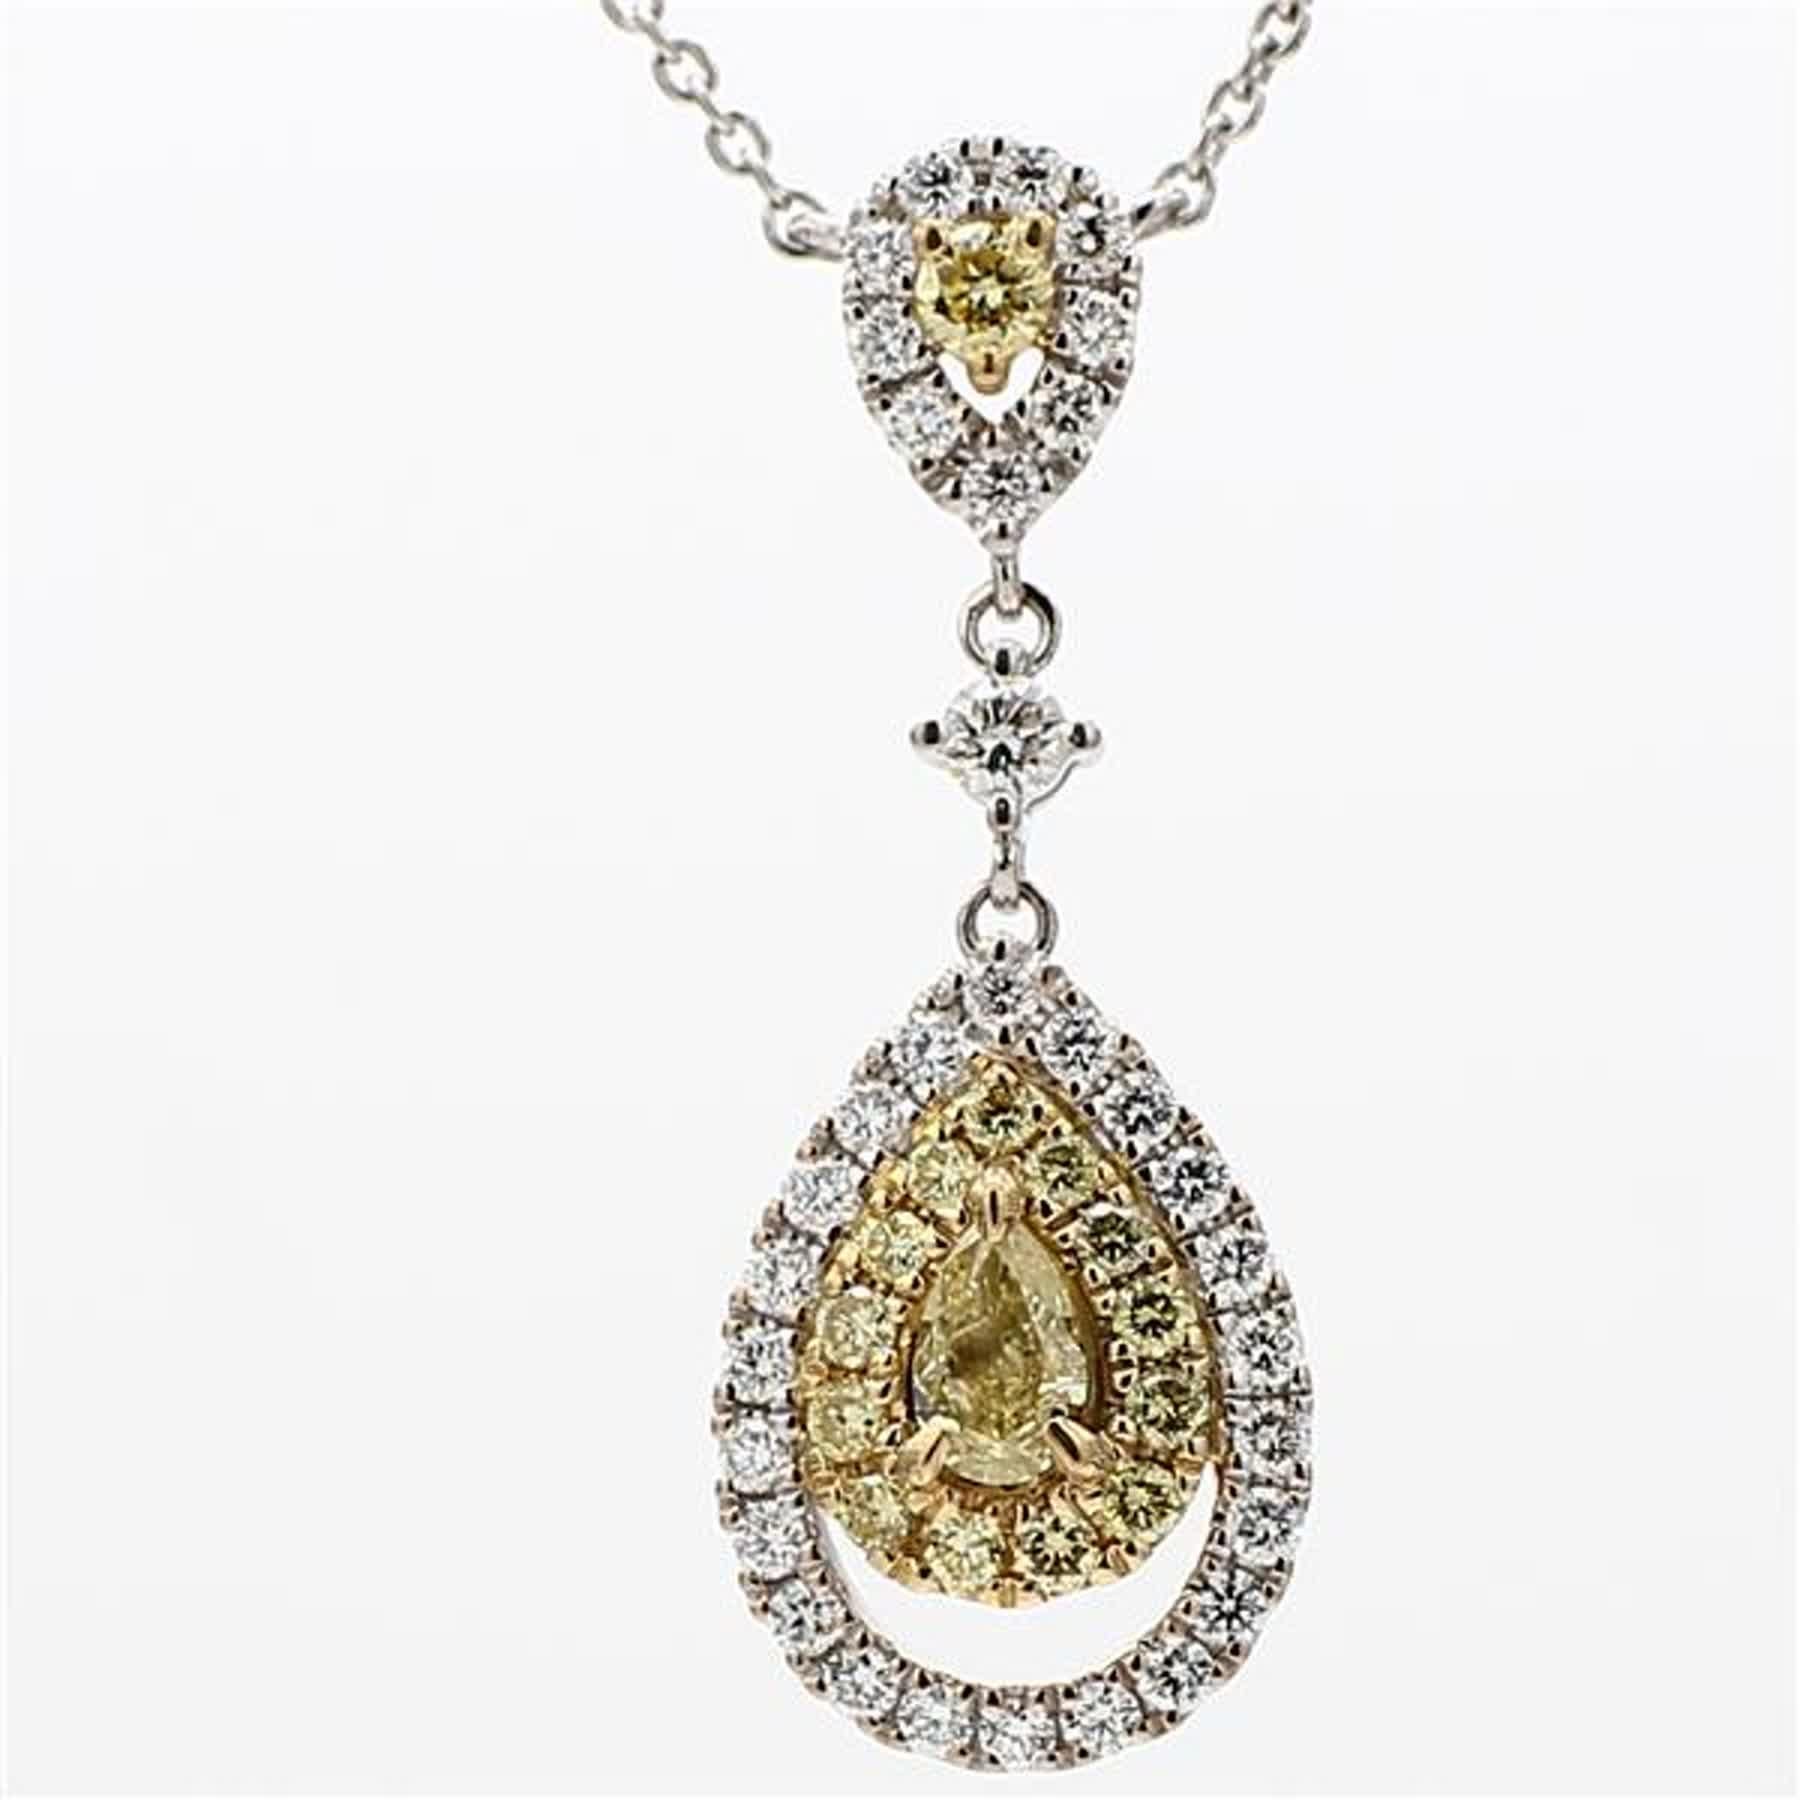 Das klassische Diamant-Halsband von RareGemWorld. Montiert in einer schönen Fassung aus 18 Karat Gelb- und Weißgold mit einem natürlichen gelben Diamanten im Birnenschliff. Der gelbe Diamant ist umgeben von runden weißen Naturdiamanten und runden